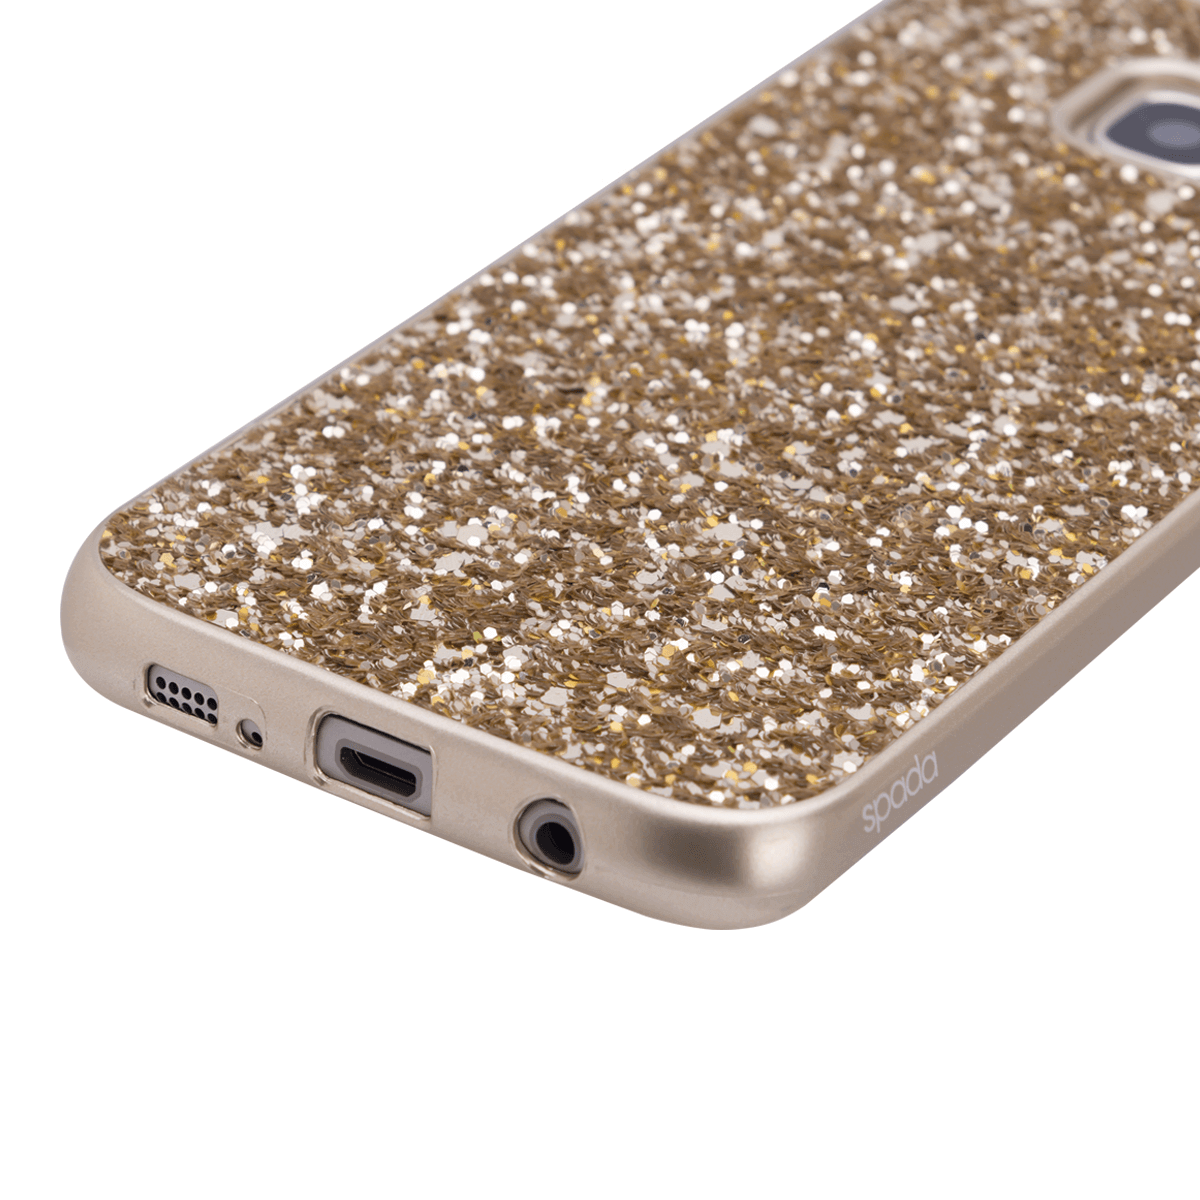 Samsung S7 için spada Glitter Gold renk kapak